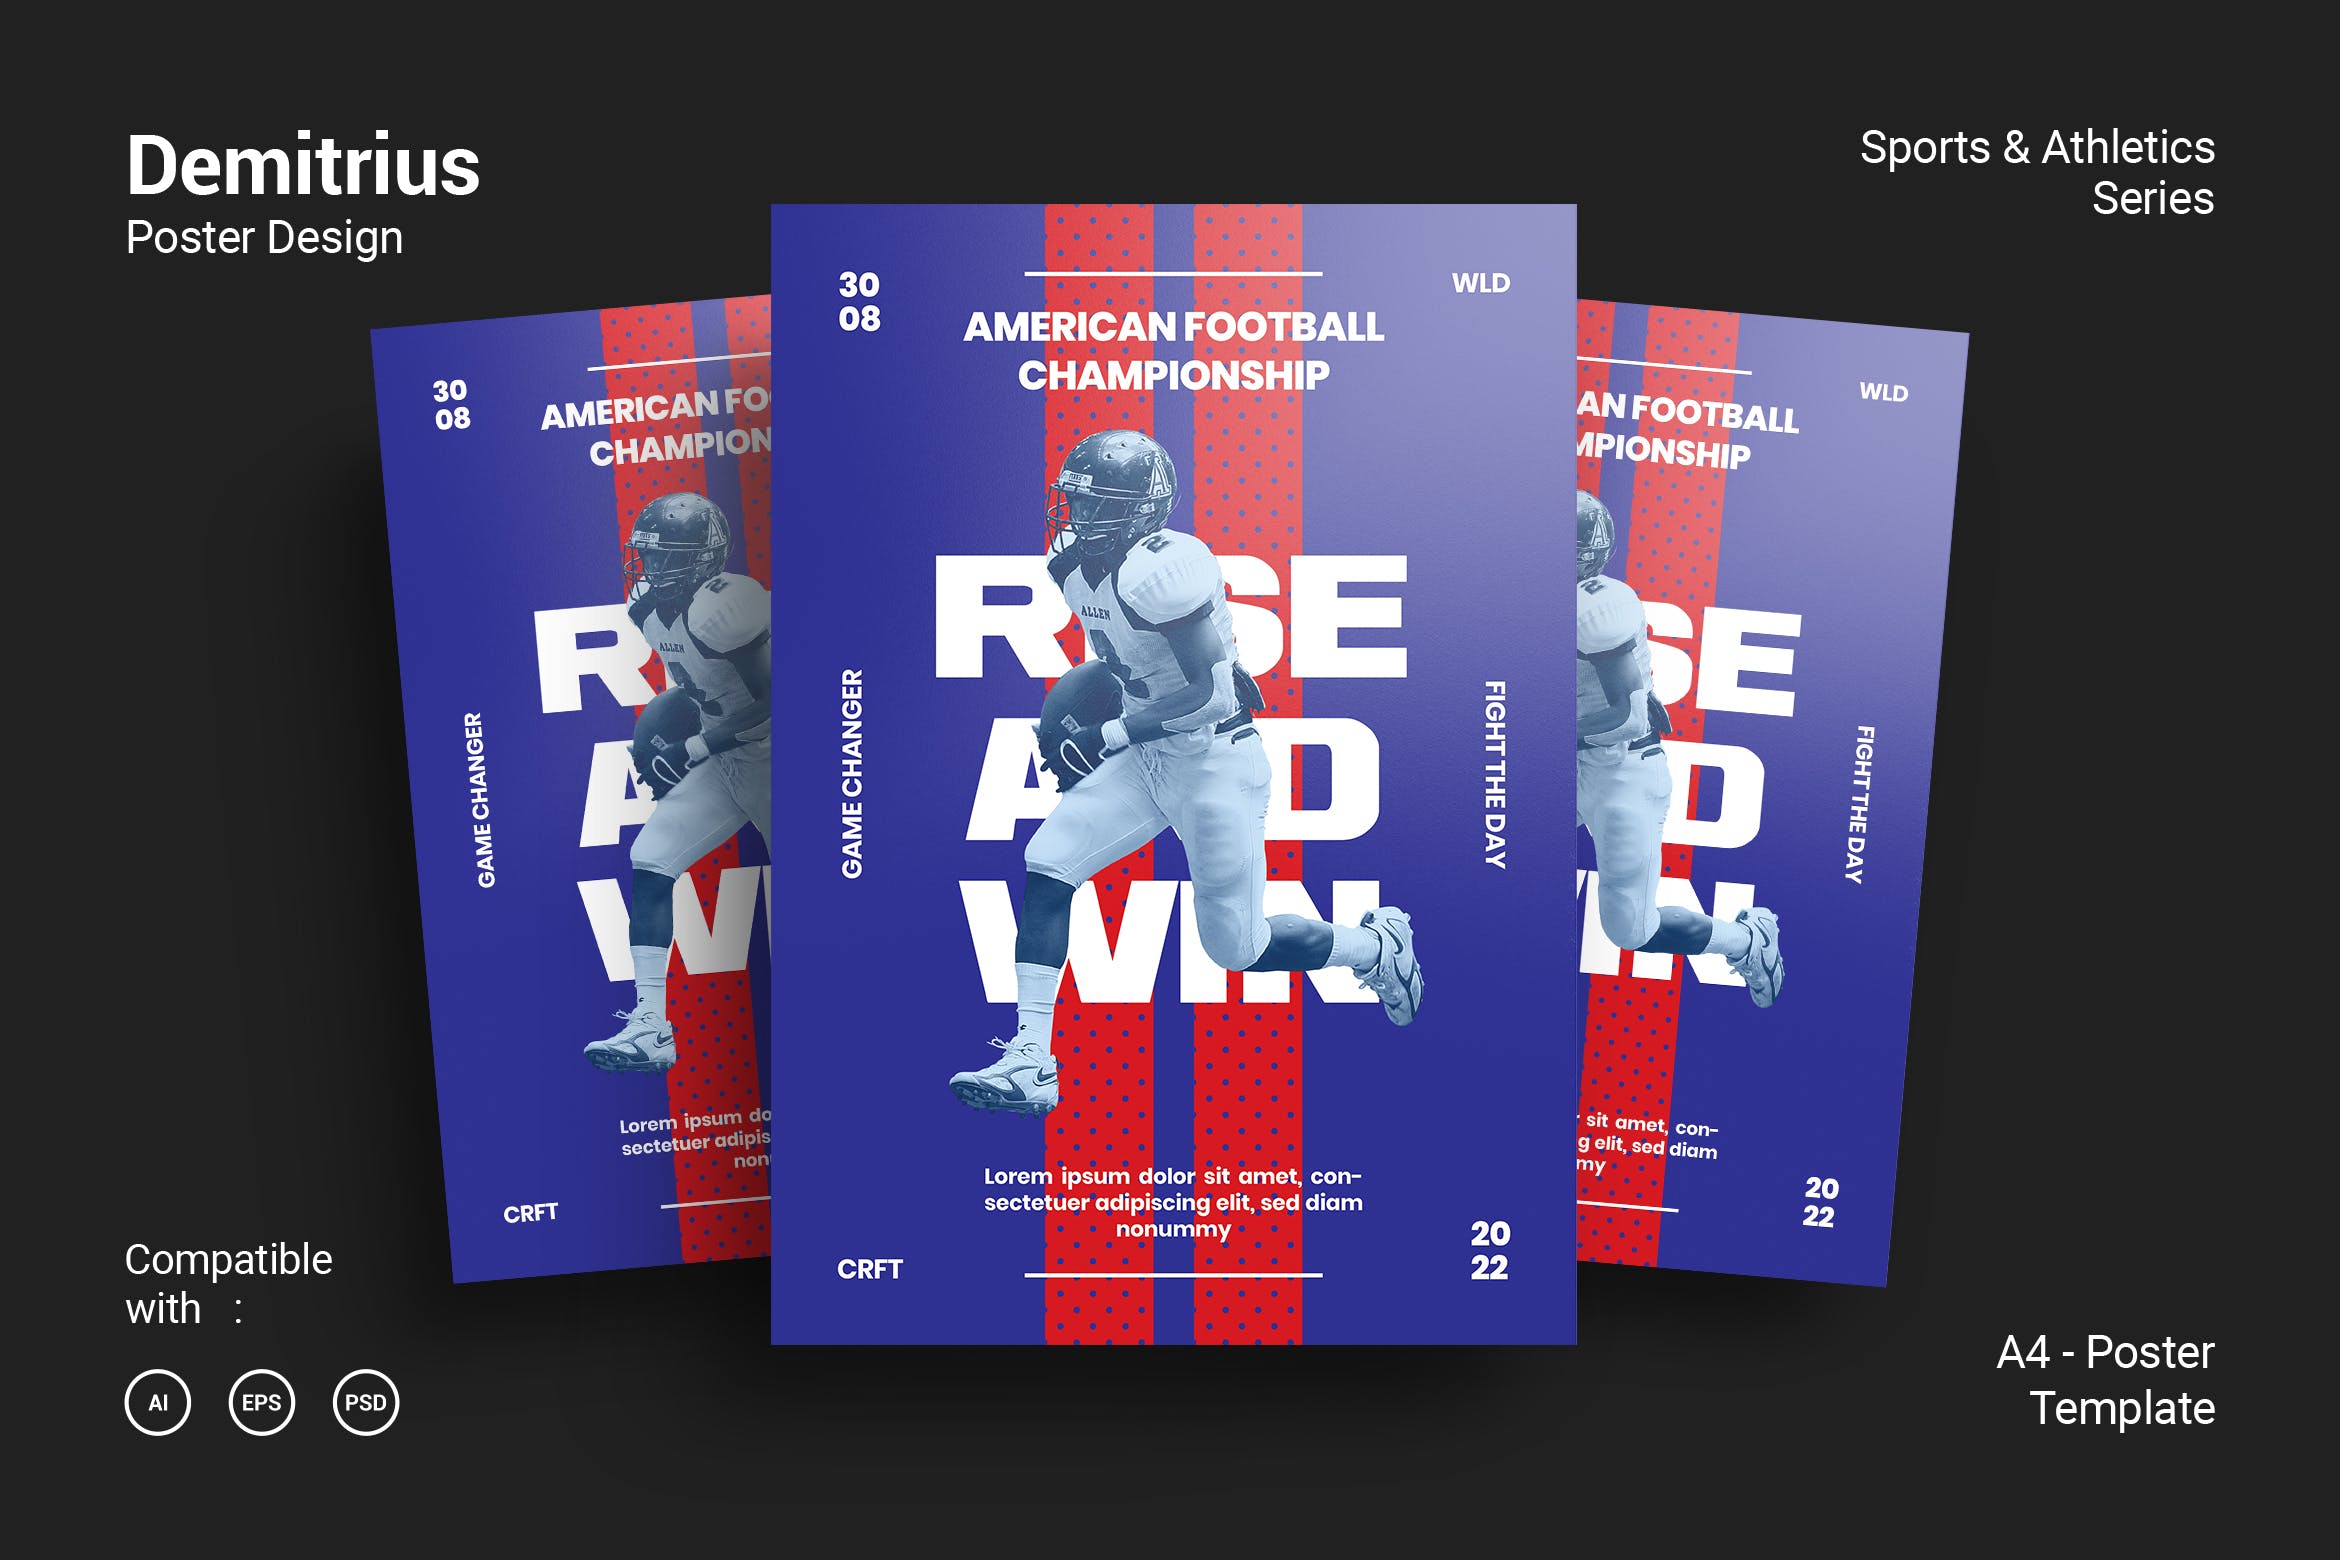 橄榄球运动海报PSD素材第一素材精选模板 Demitrius Poster Design插图